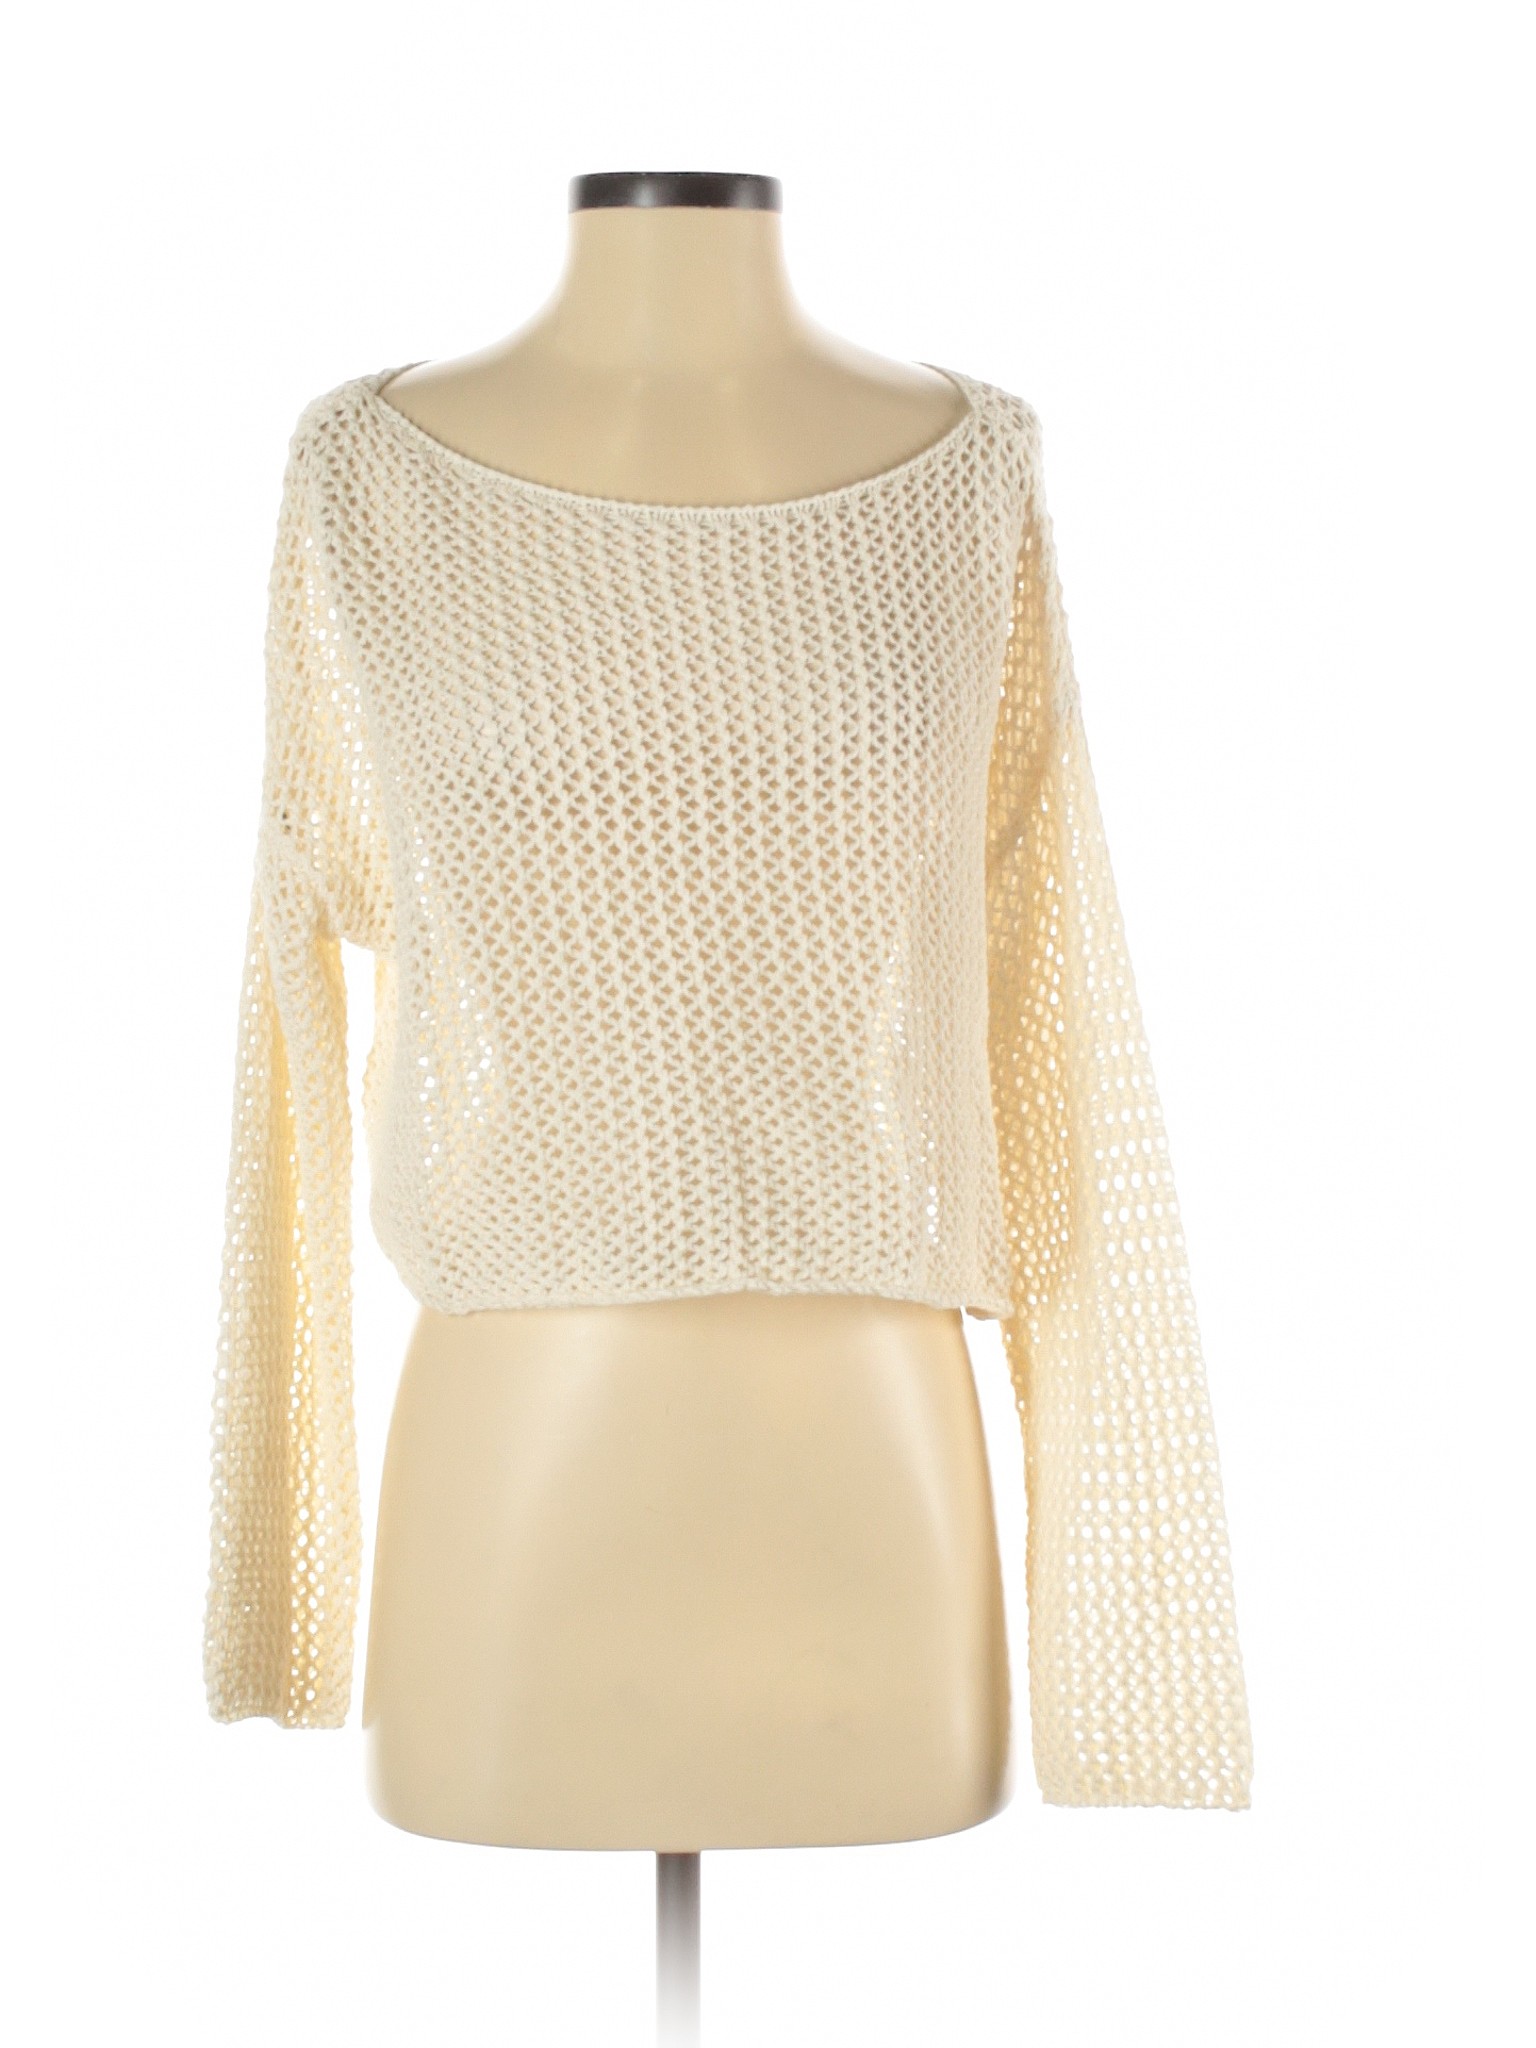 Forever 21 Women White Pullover Sweater S | eBay